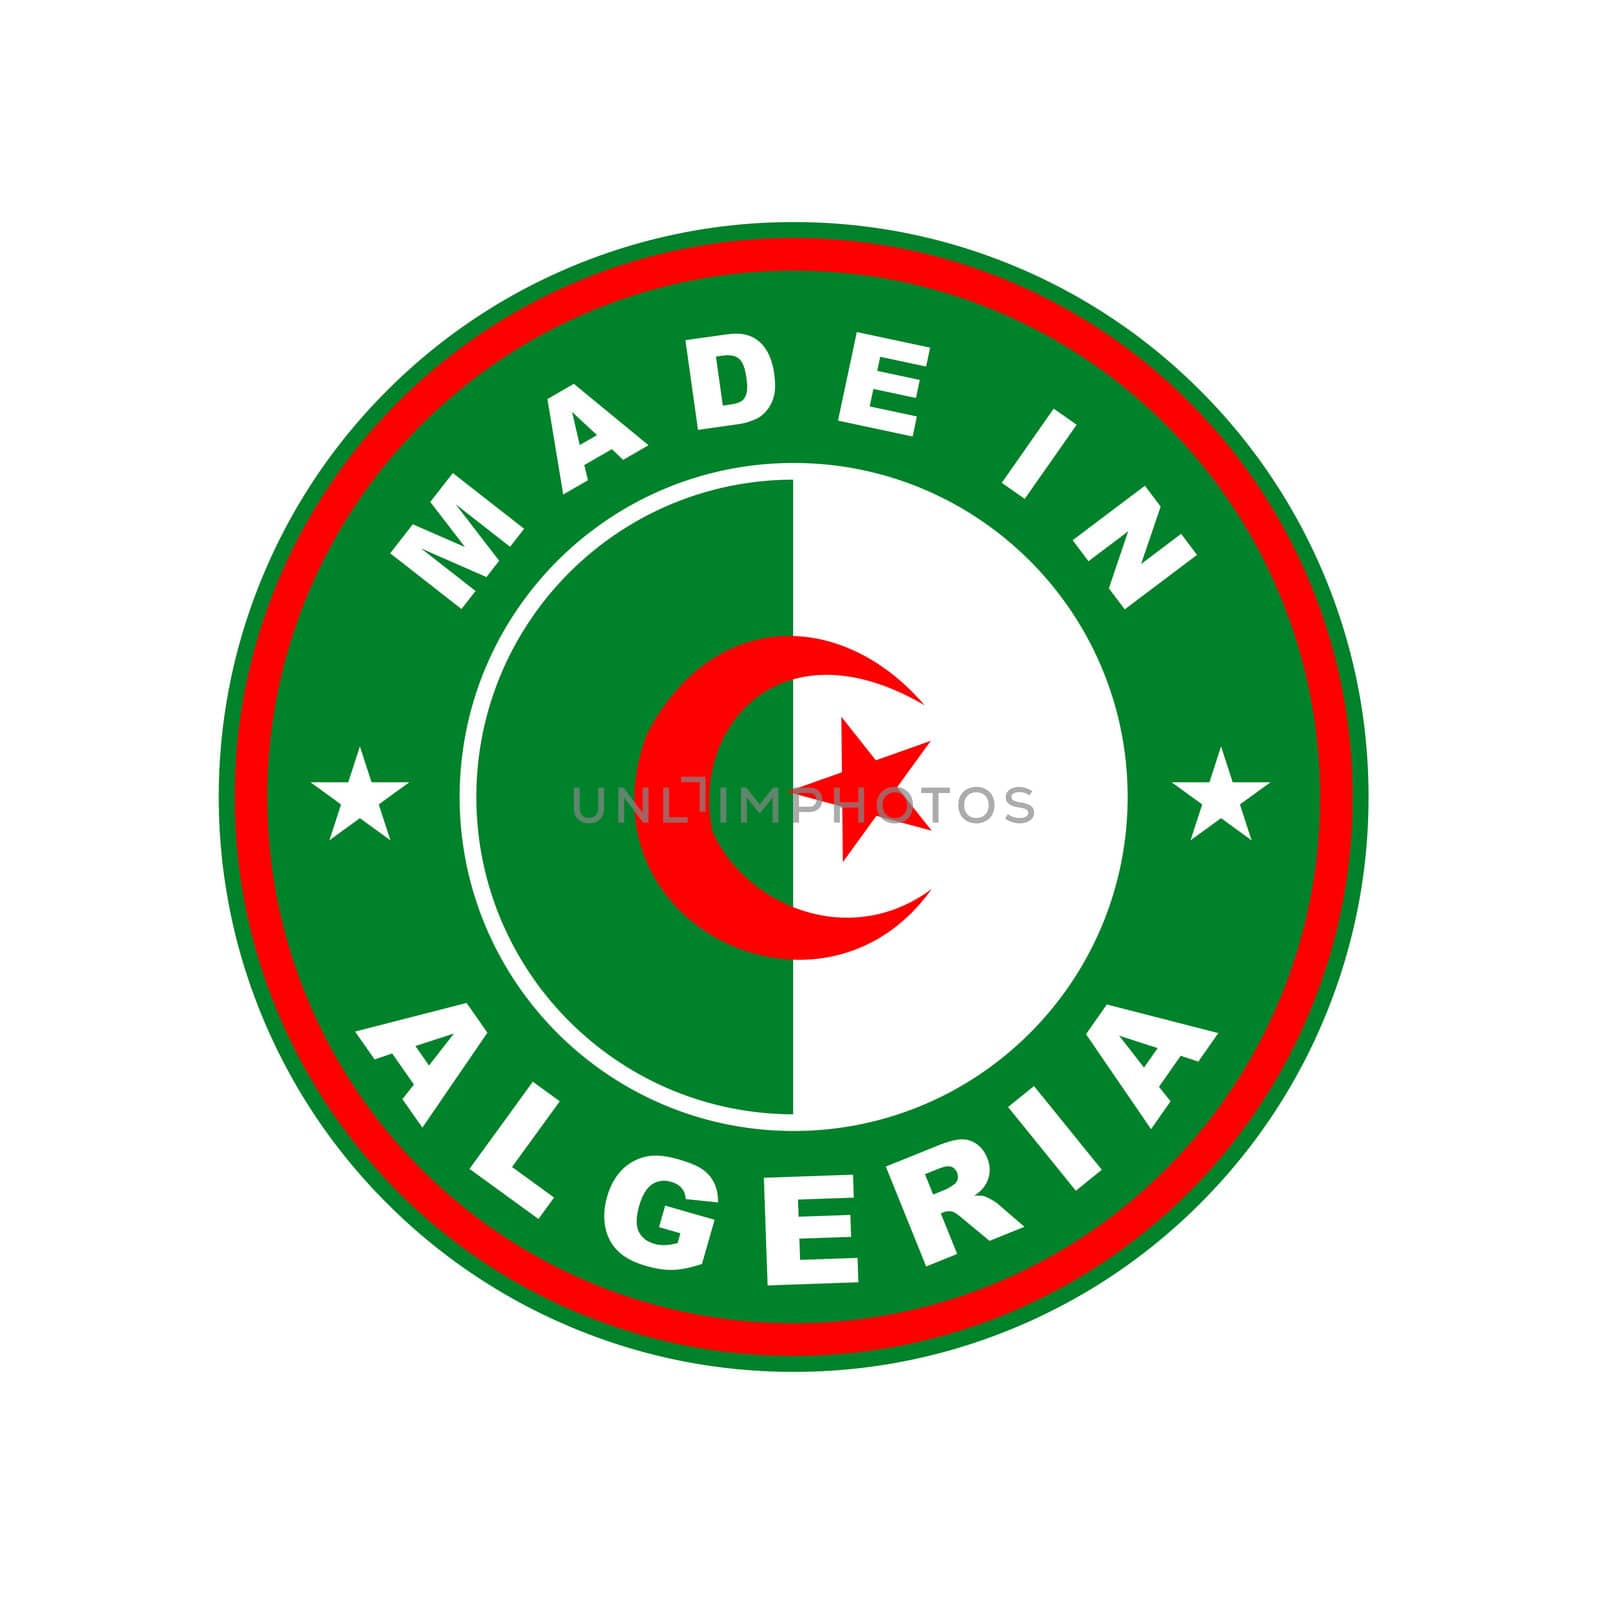 made in algeria by tony4urban